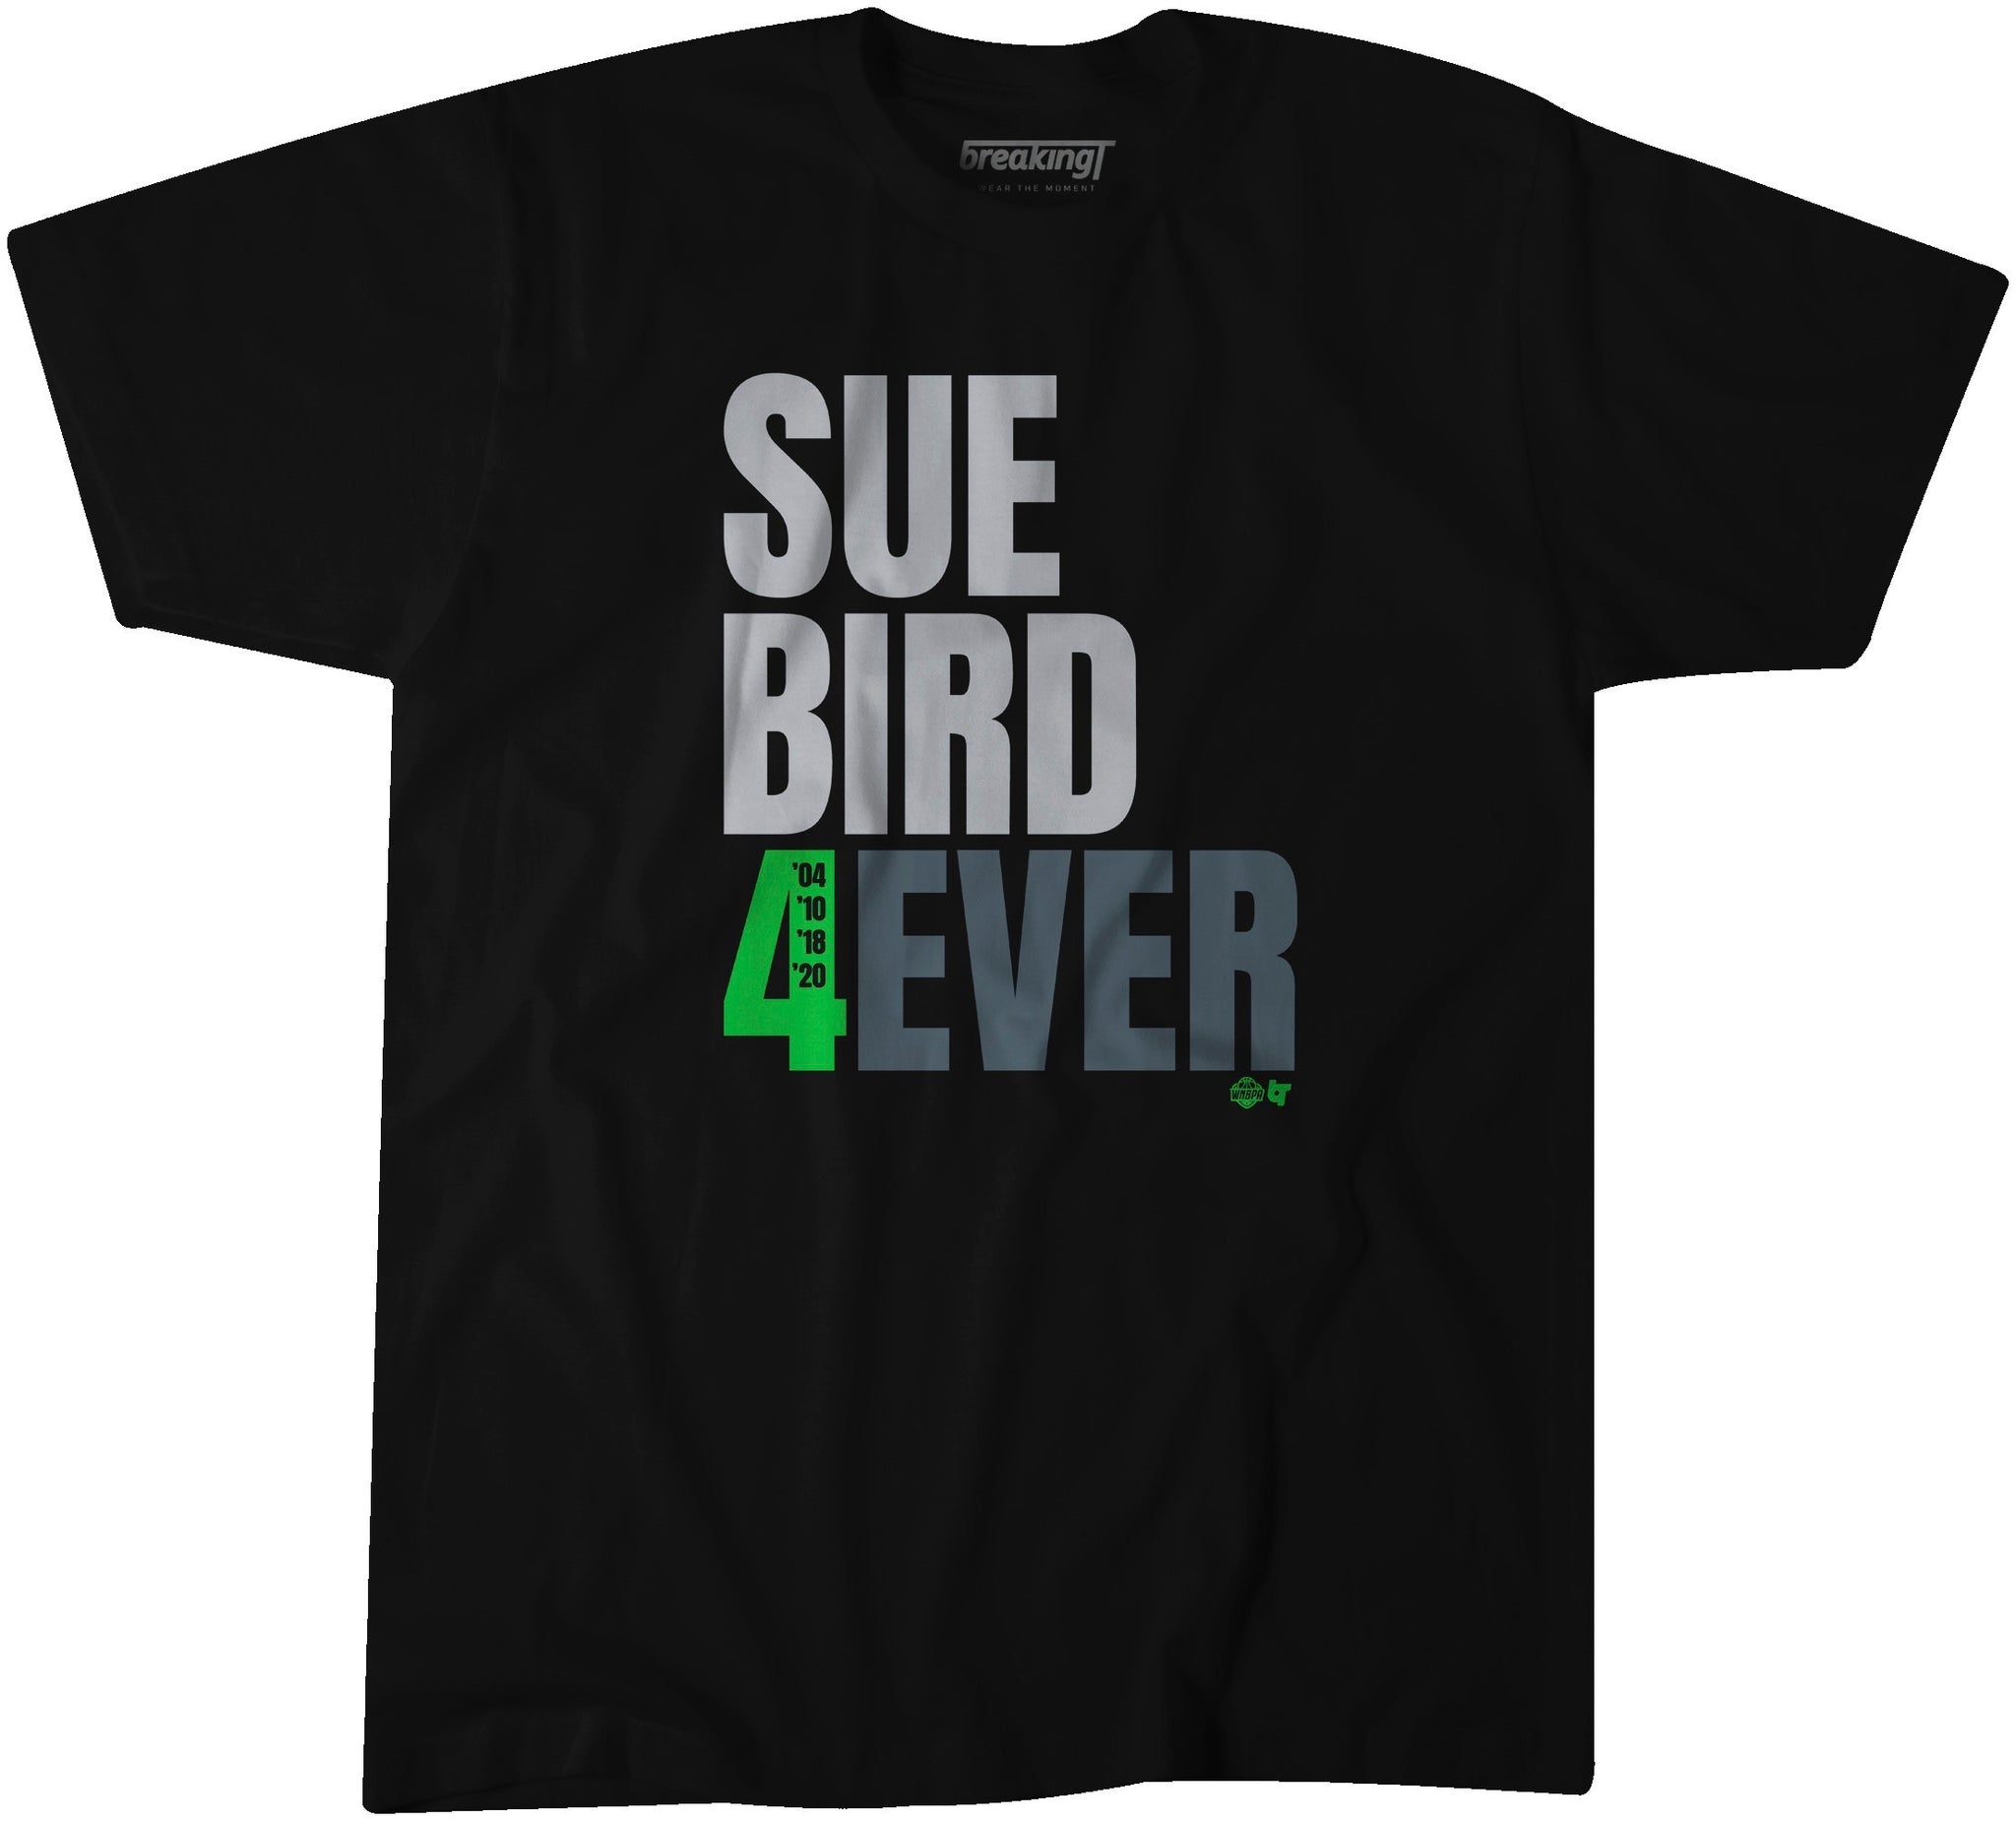 Sue Bird 4Ever Tee